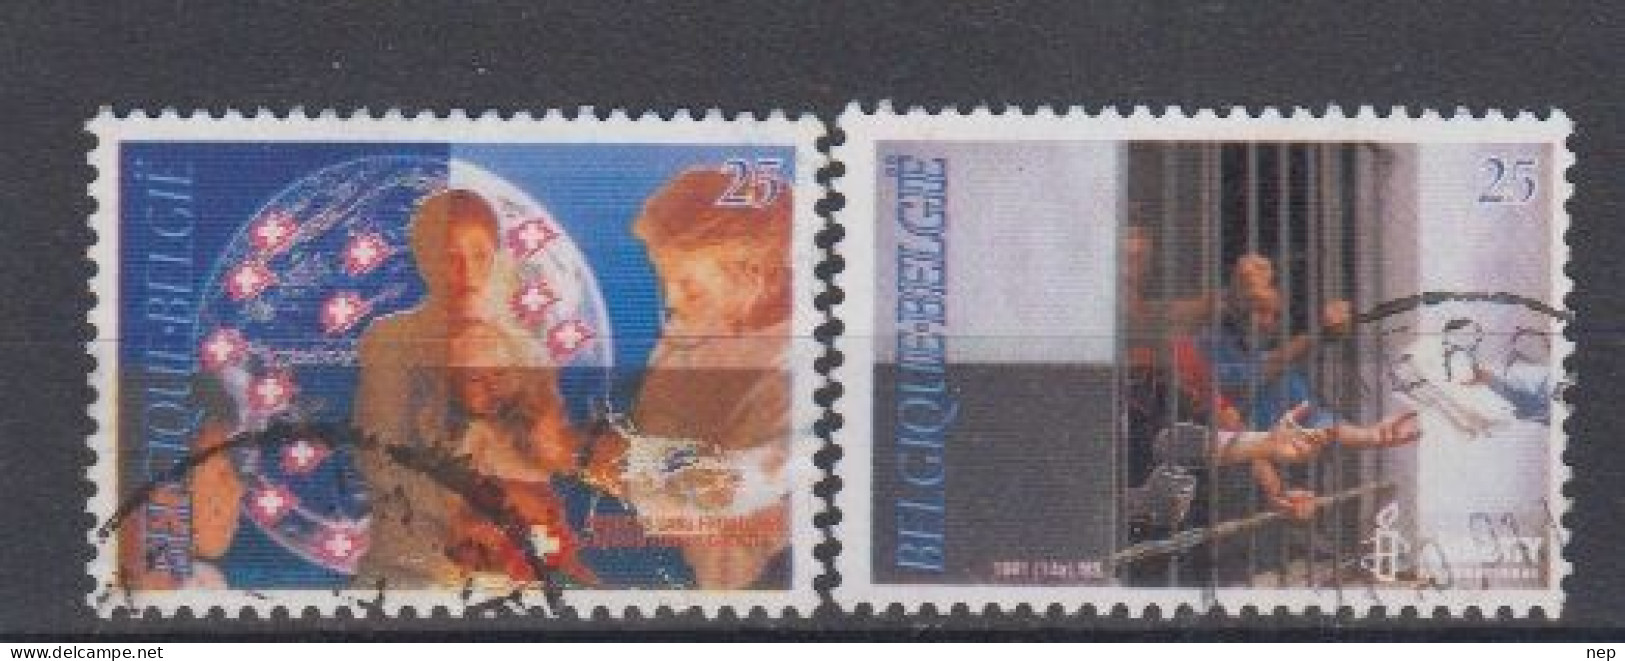 BELGIË - OPB - 1991 - Nr 2422/23 - Gest/Obl/Us - Used Stamps